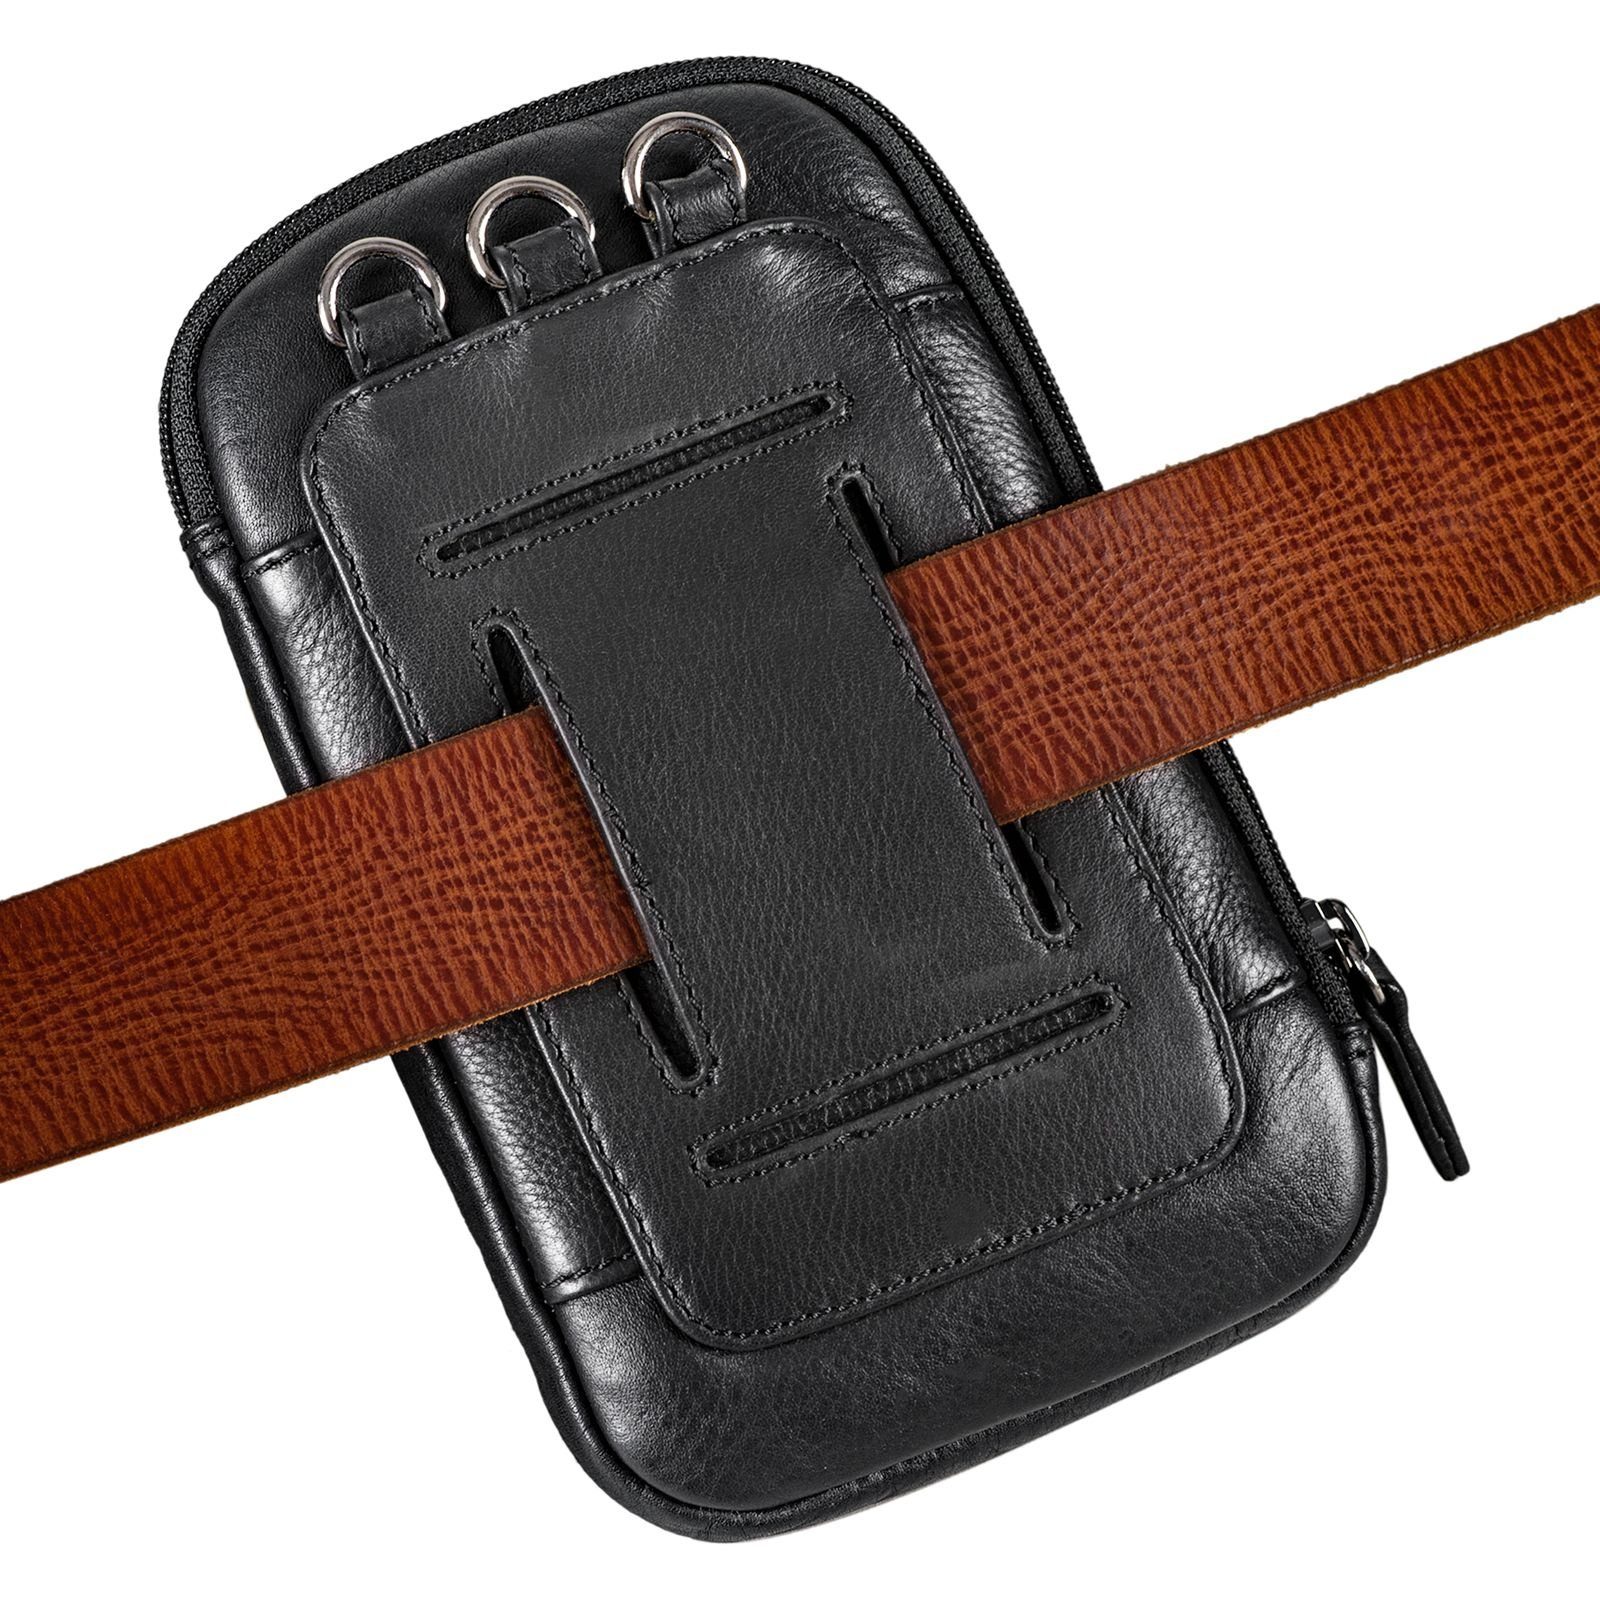 STILORD Handtasche "Lane" 3-in-1 Handy schwarz Gürteltasche Umhängetasche